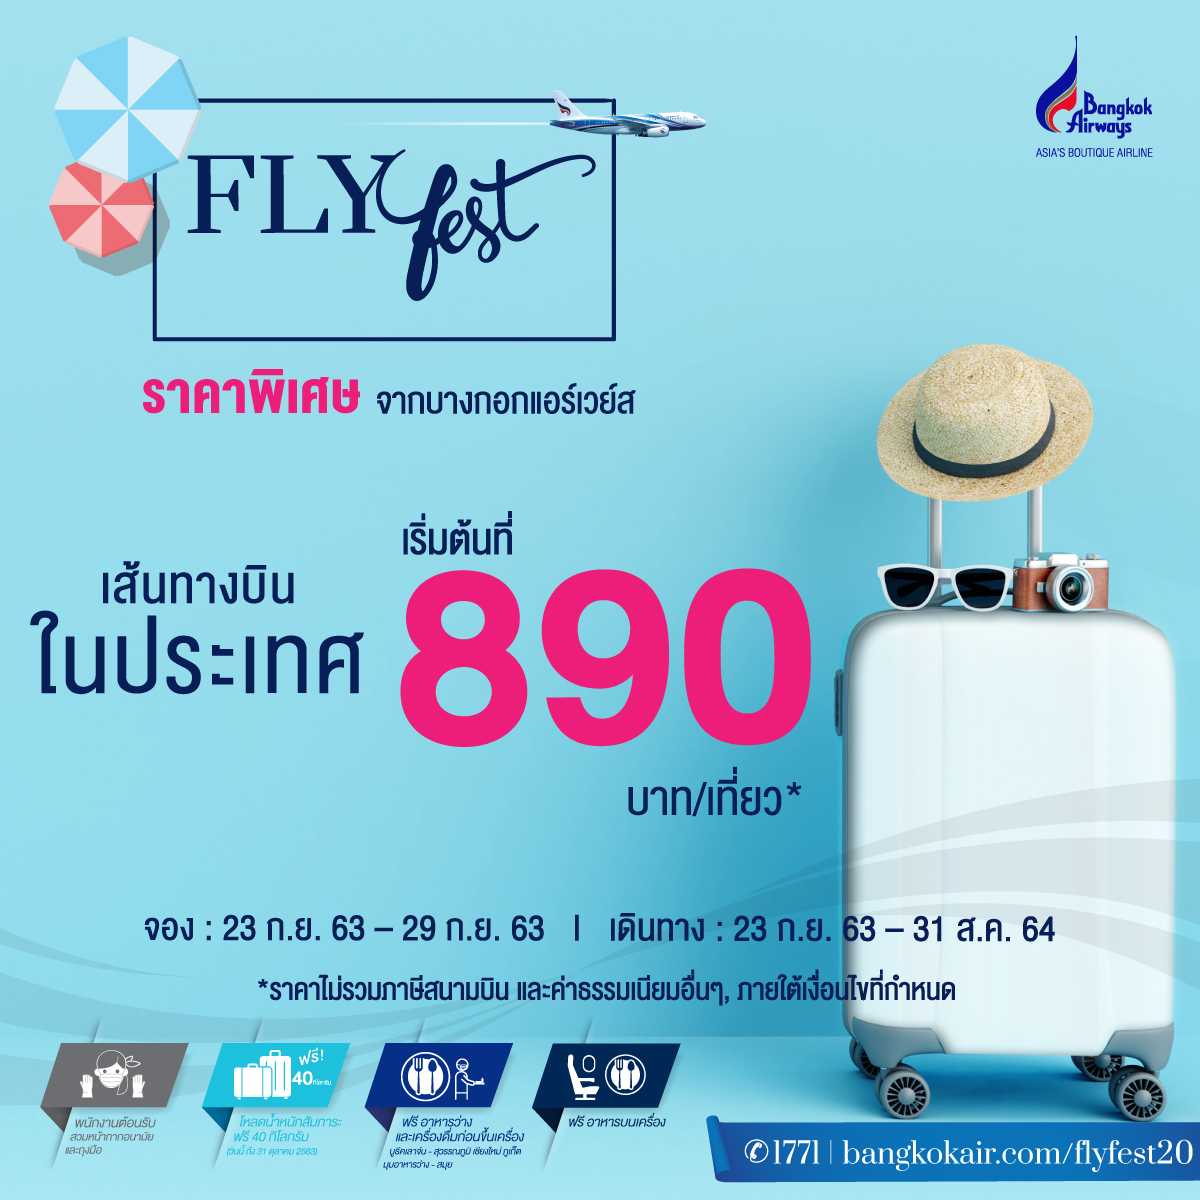 bangkok Airways